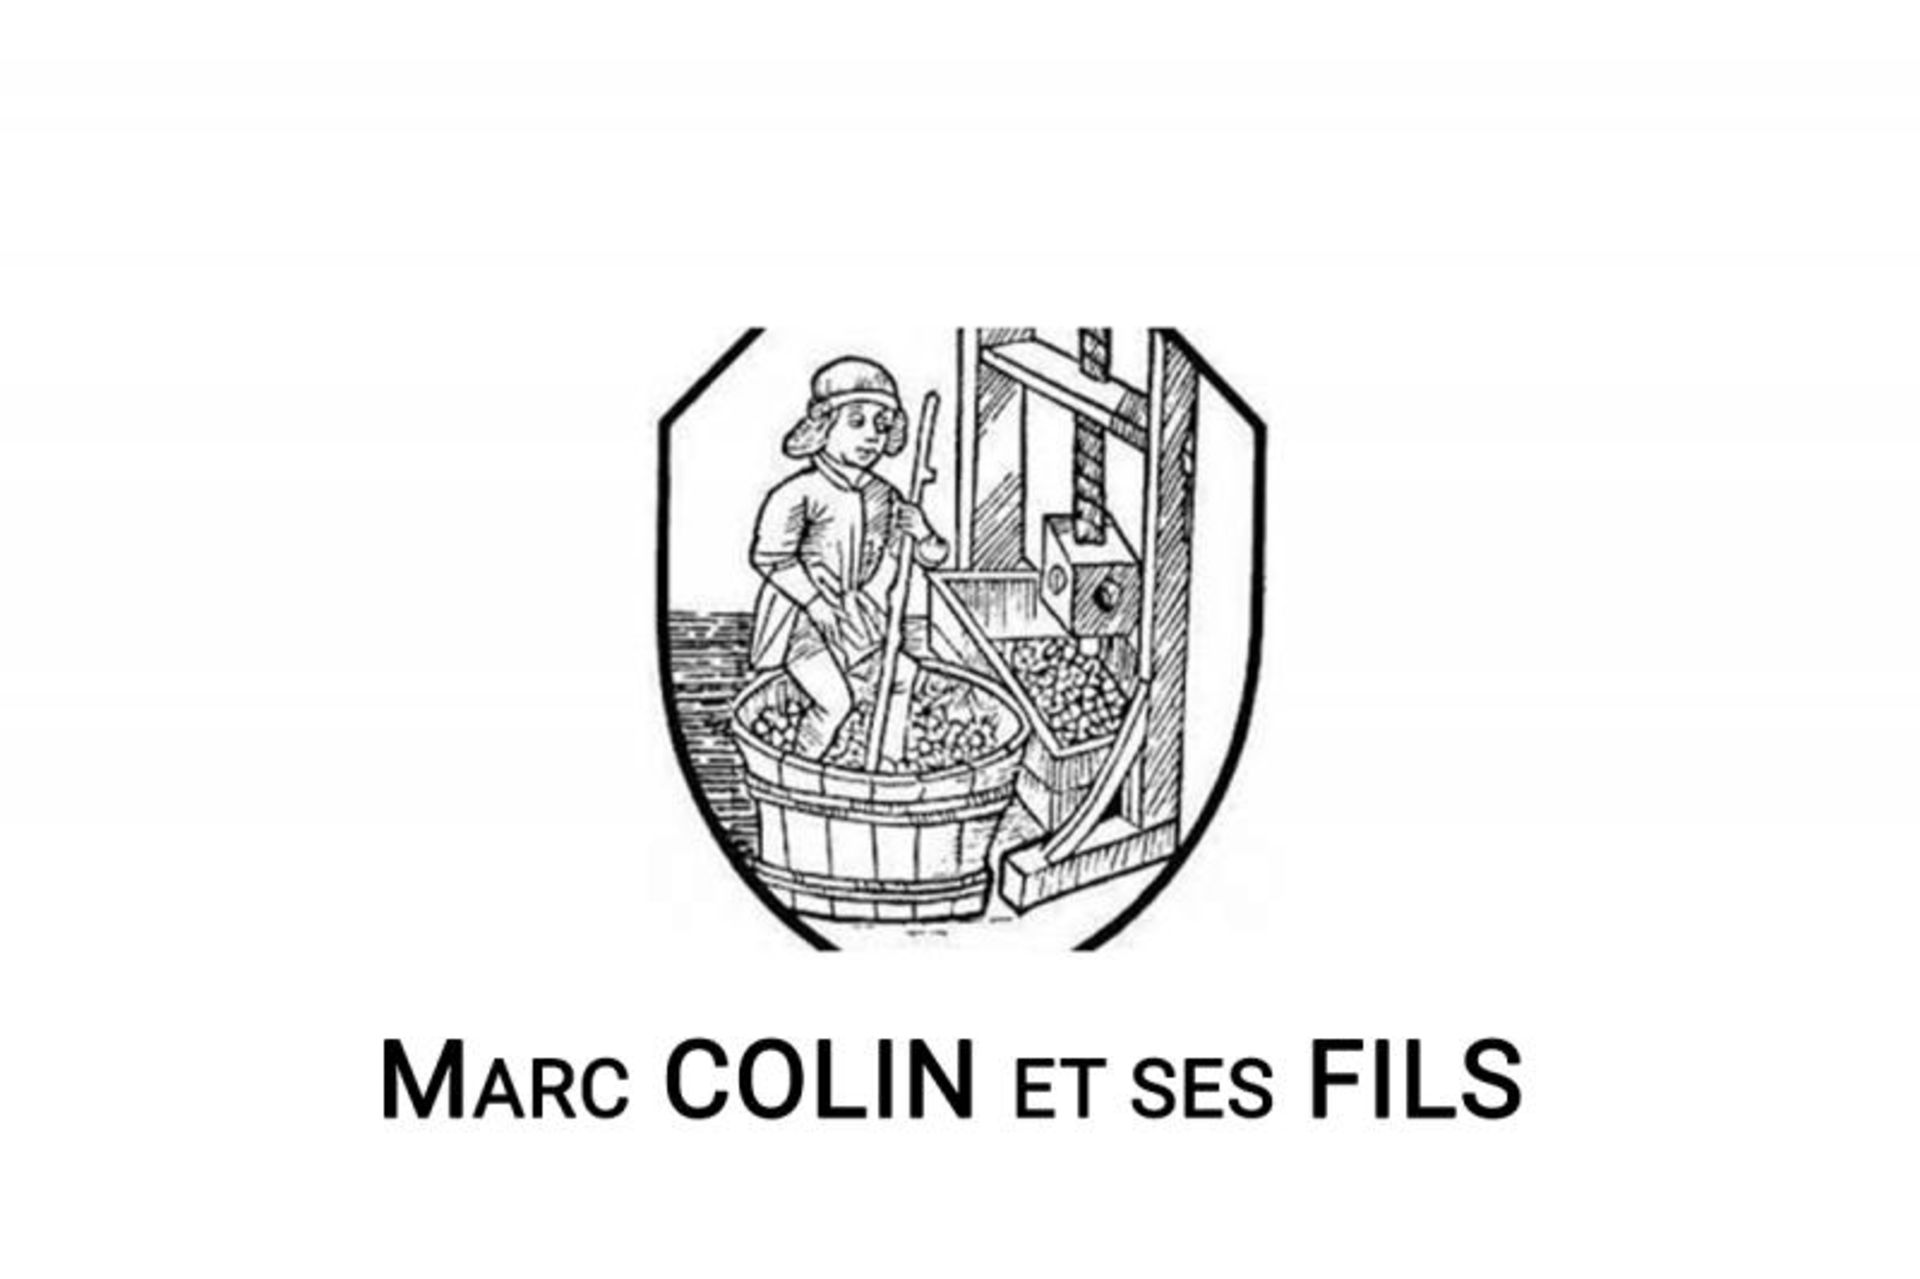 Bourgogne Aligoté 2018, Domaine Marc Colin (12) Saint-Aubin, Luce 2020, Domaine Marc Colin ...